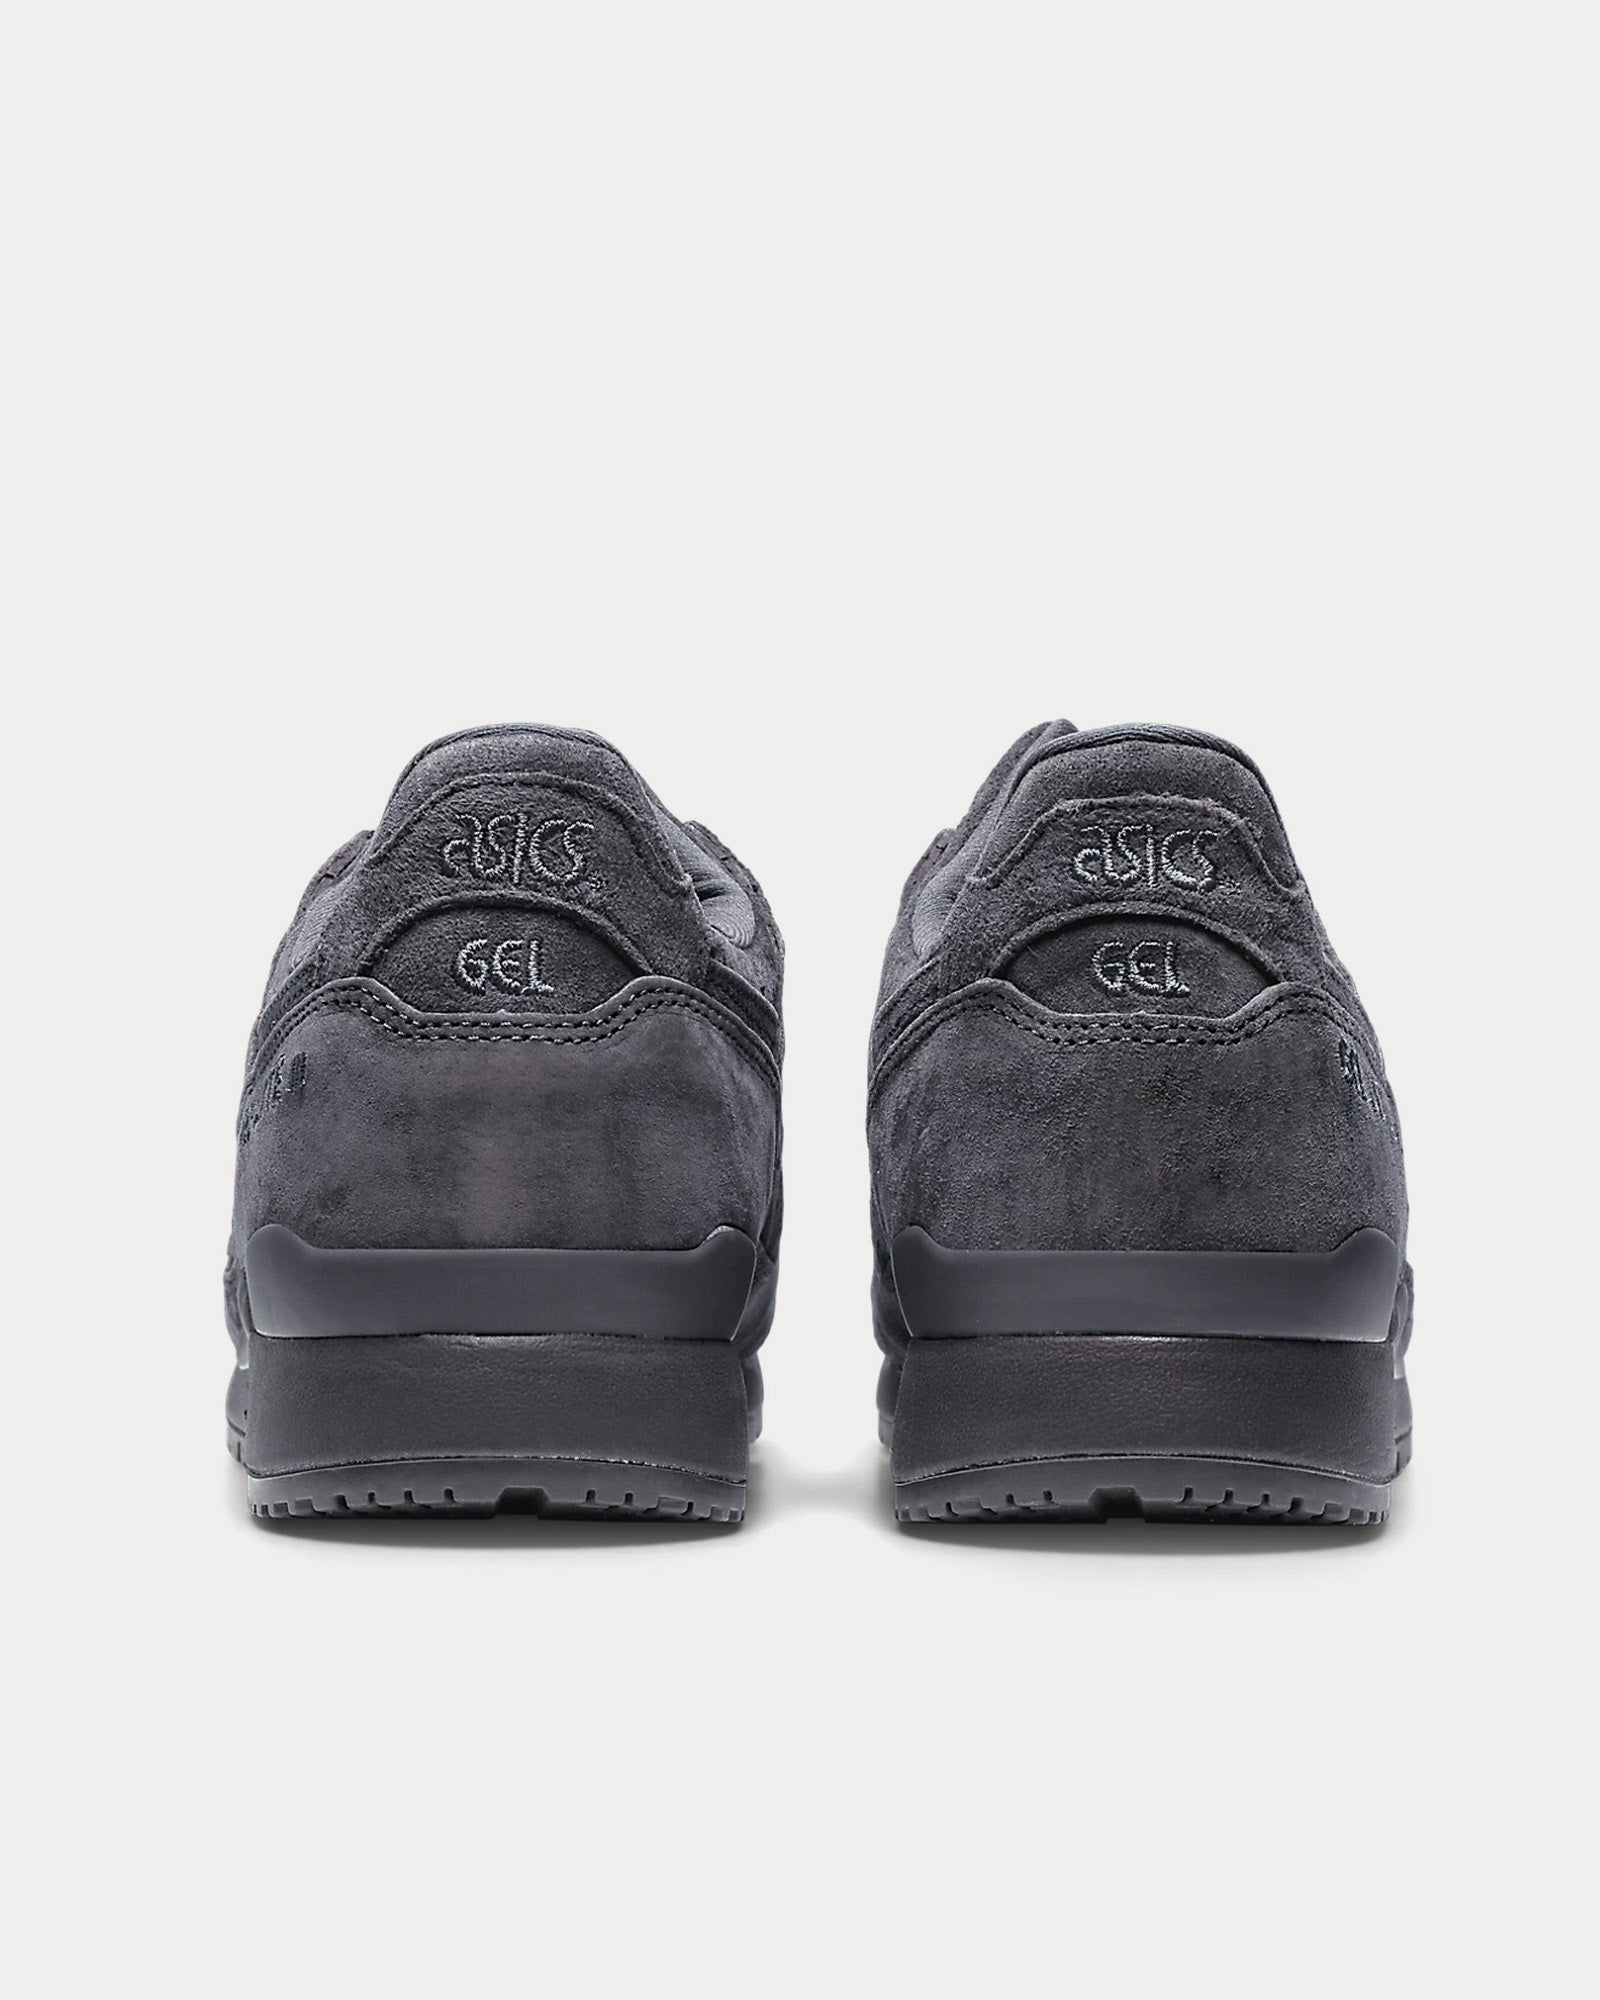 Asics - Gel-Lyte III OG Obsidian Grey / Obsidian Grey Low Top Sneakers